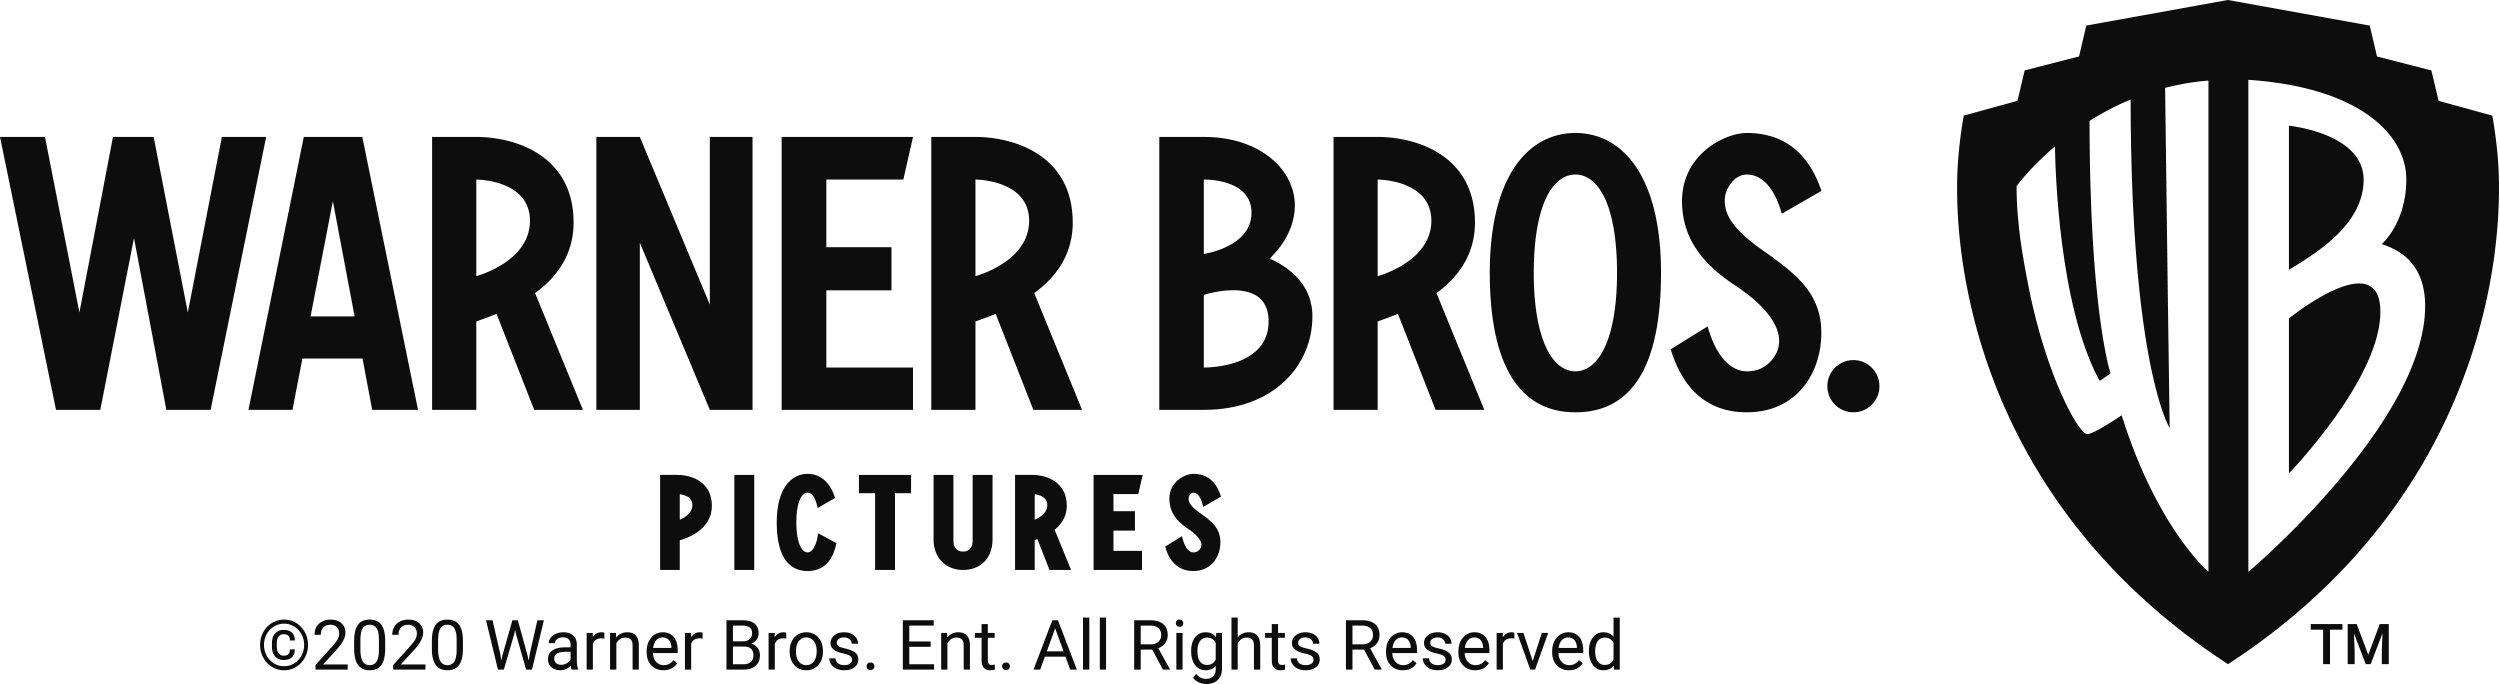 Warner_Bros_Pictures_2020_logo.png